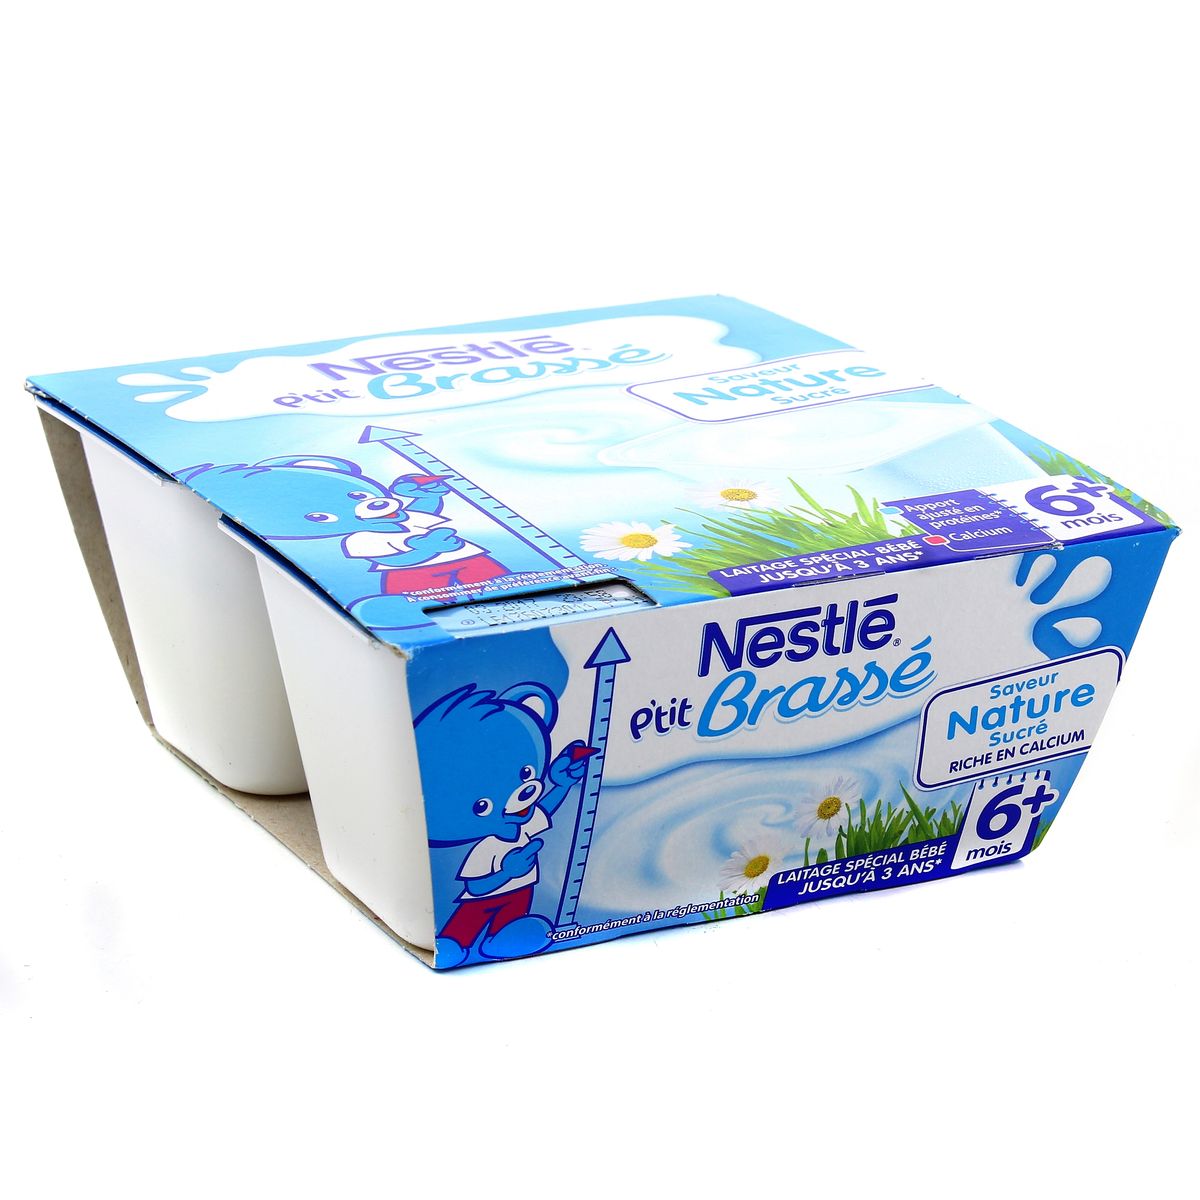 Achat Vente Nestle P Tit Brasse Saveur Nature Des 6 Mois 4x100g